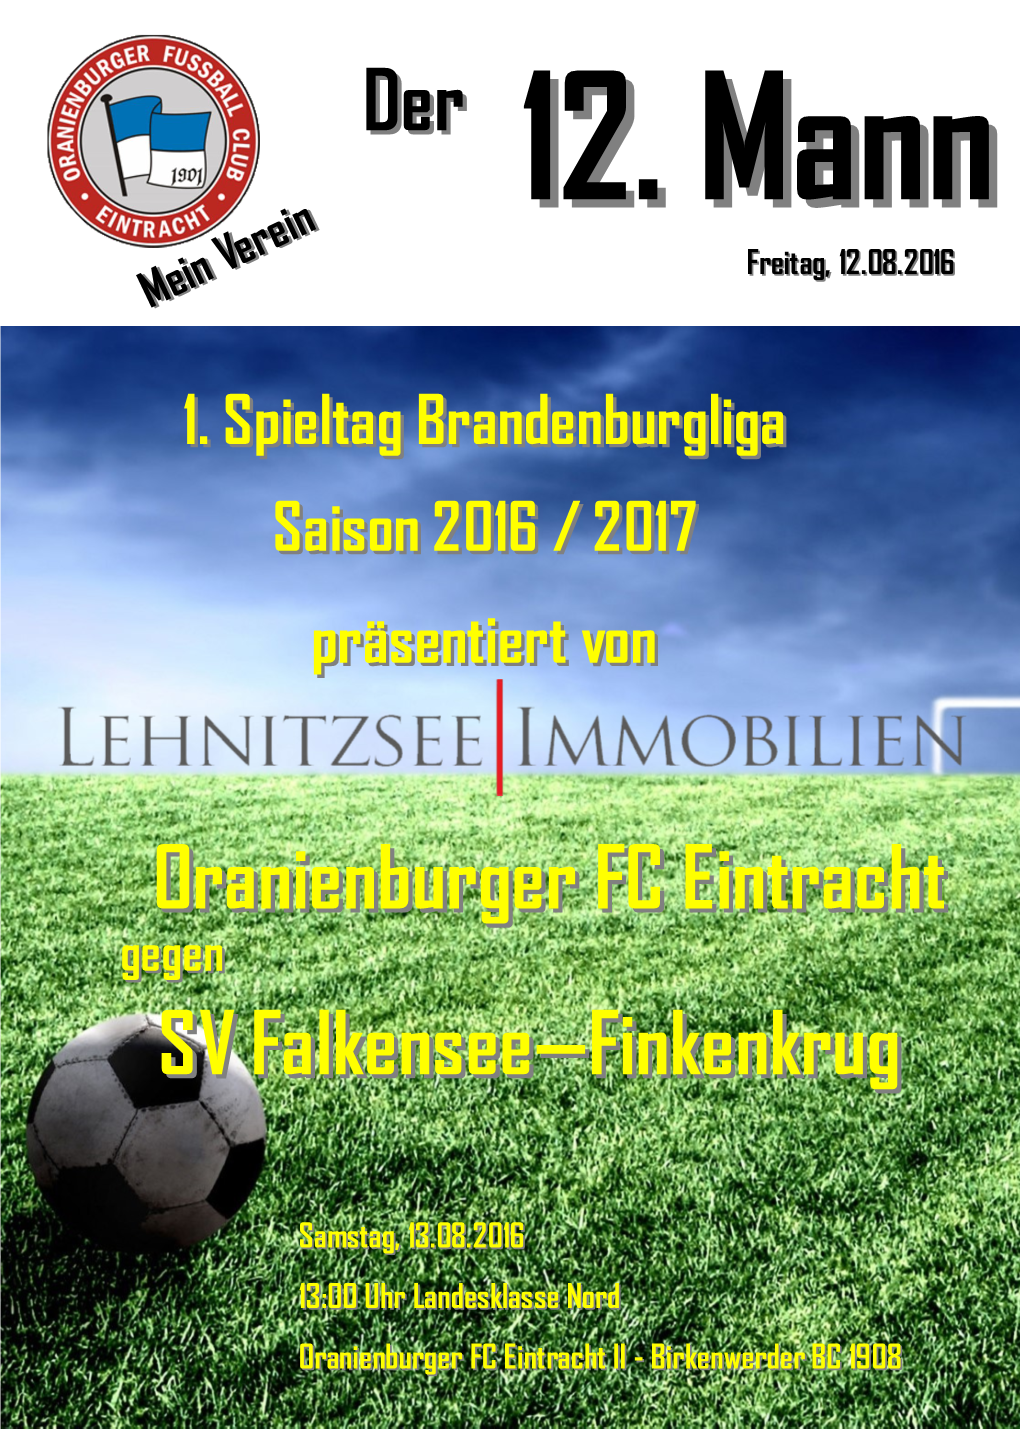 SV Falkensee—Finkenkrug Oranienburger FC Eintracht